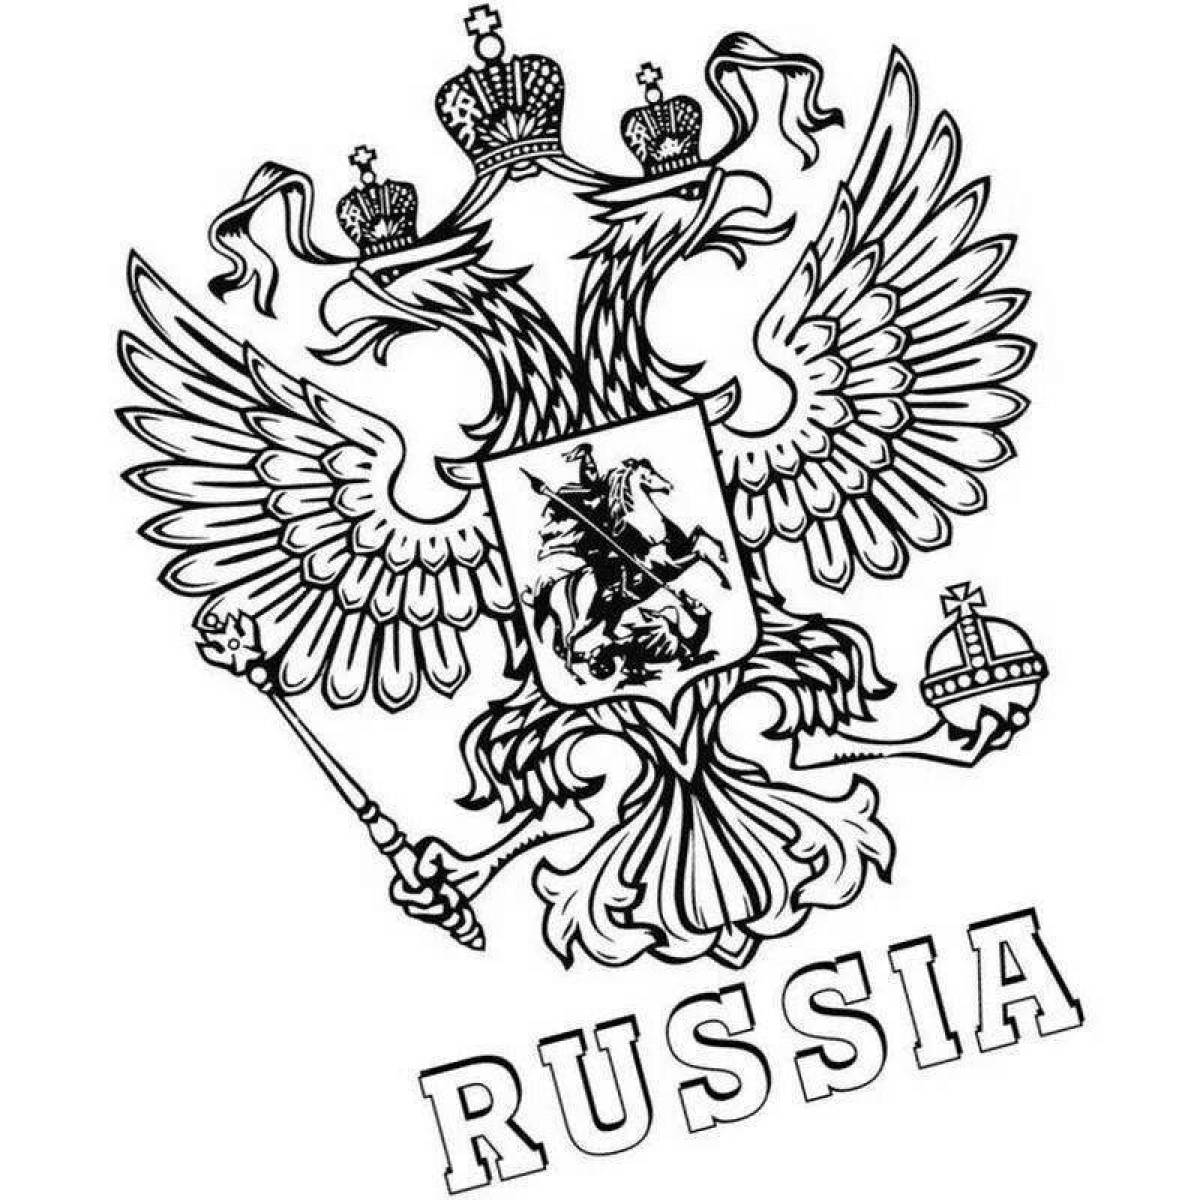 Флаг российской империи #3